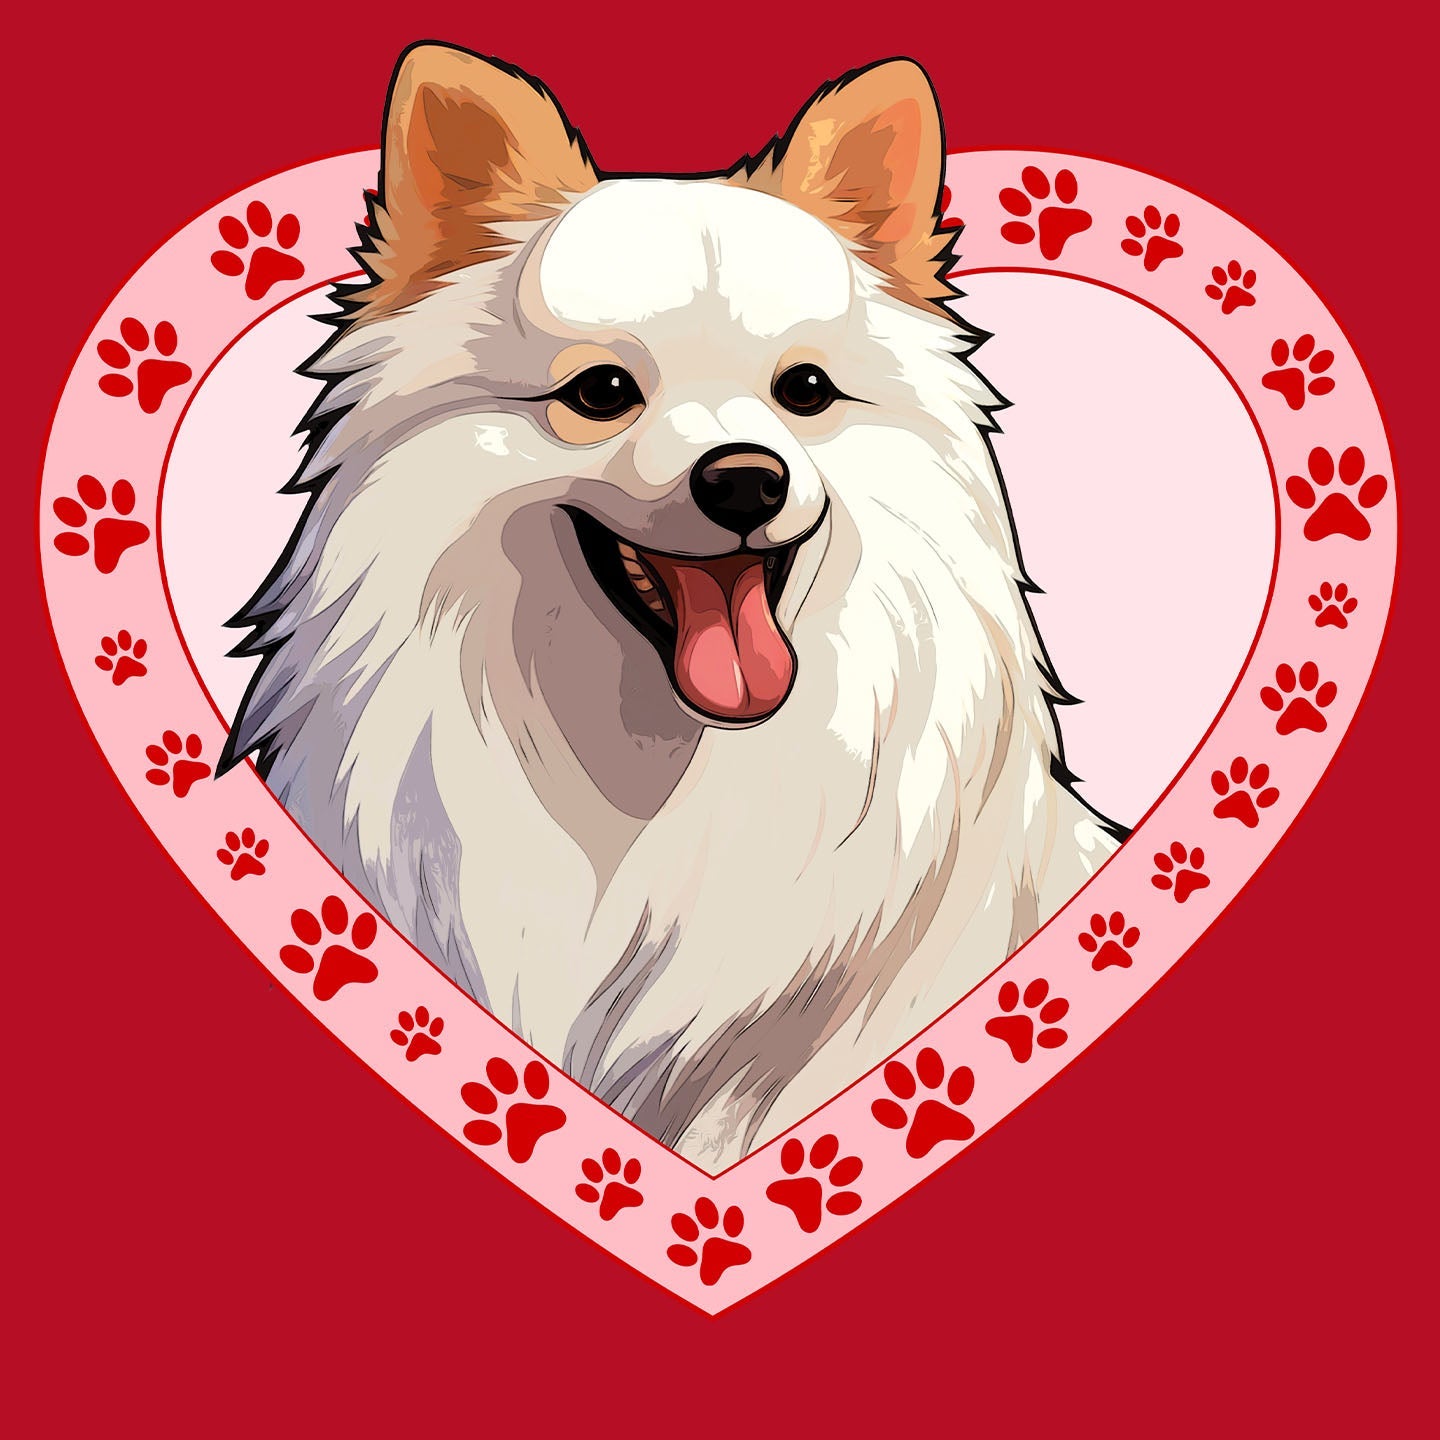 American Eskimo Dog Illustration In Heart - Women's V-Neck T-Shirt